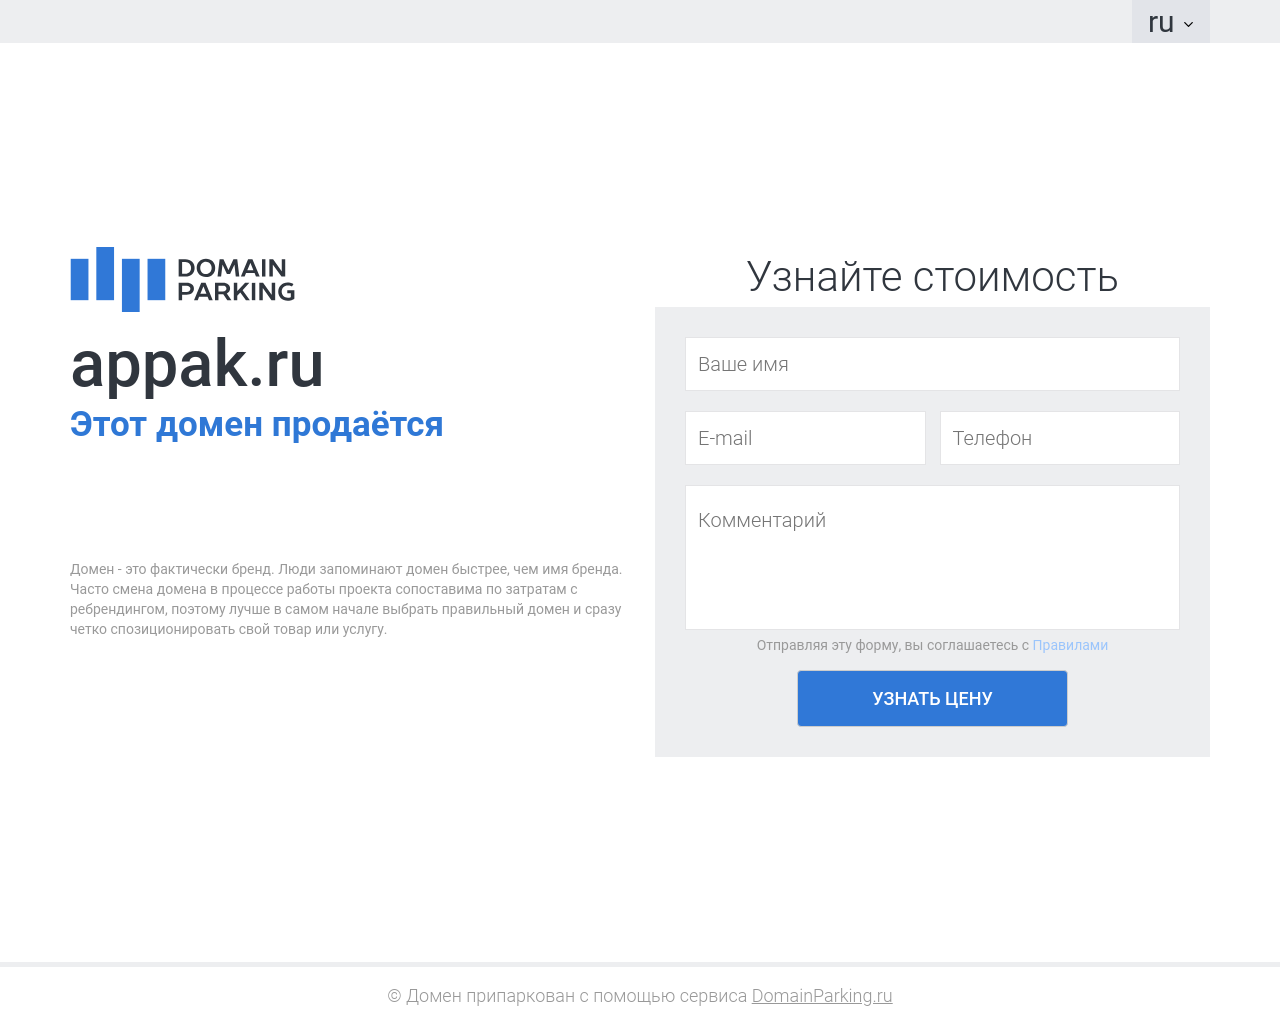 Изображение сайта appak.ru в разрешении 1280x1024